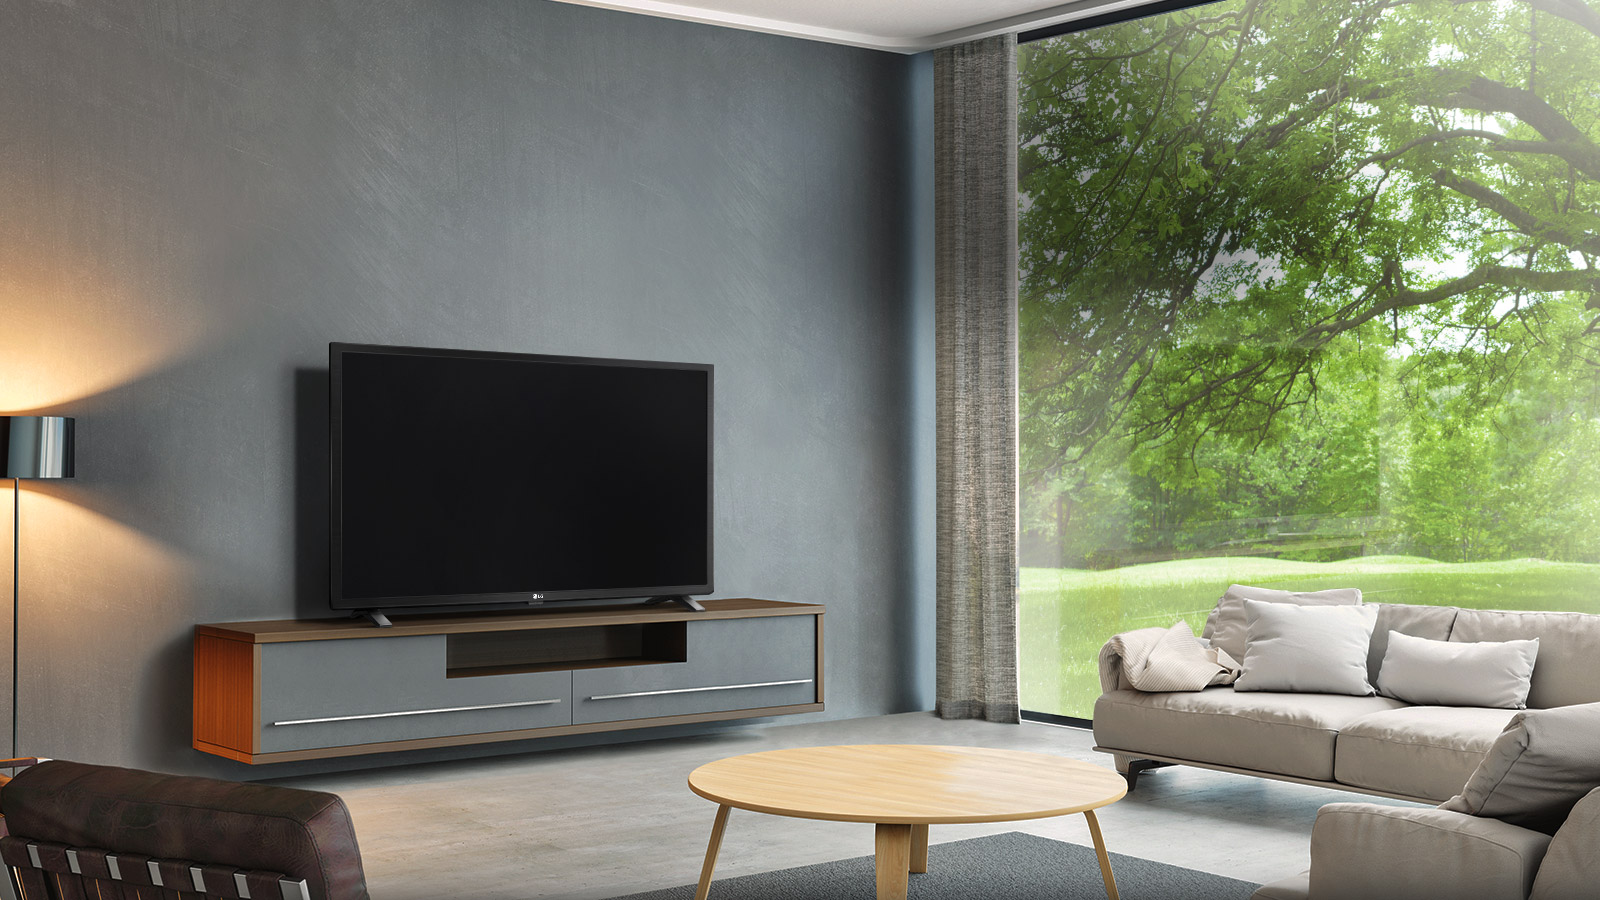 طراحی ساده و زیبای تلویزیون ال جی 43LM5500